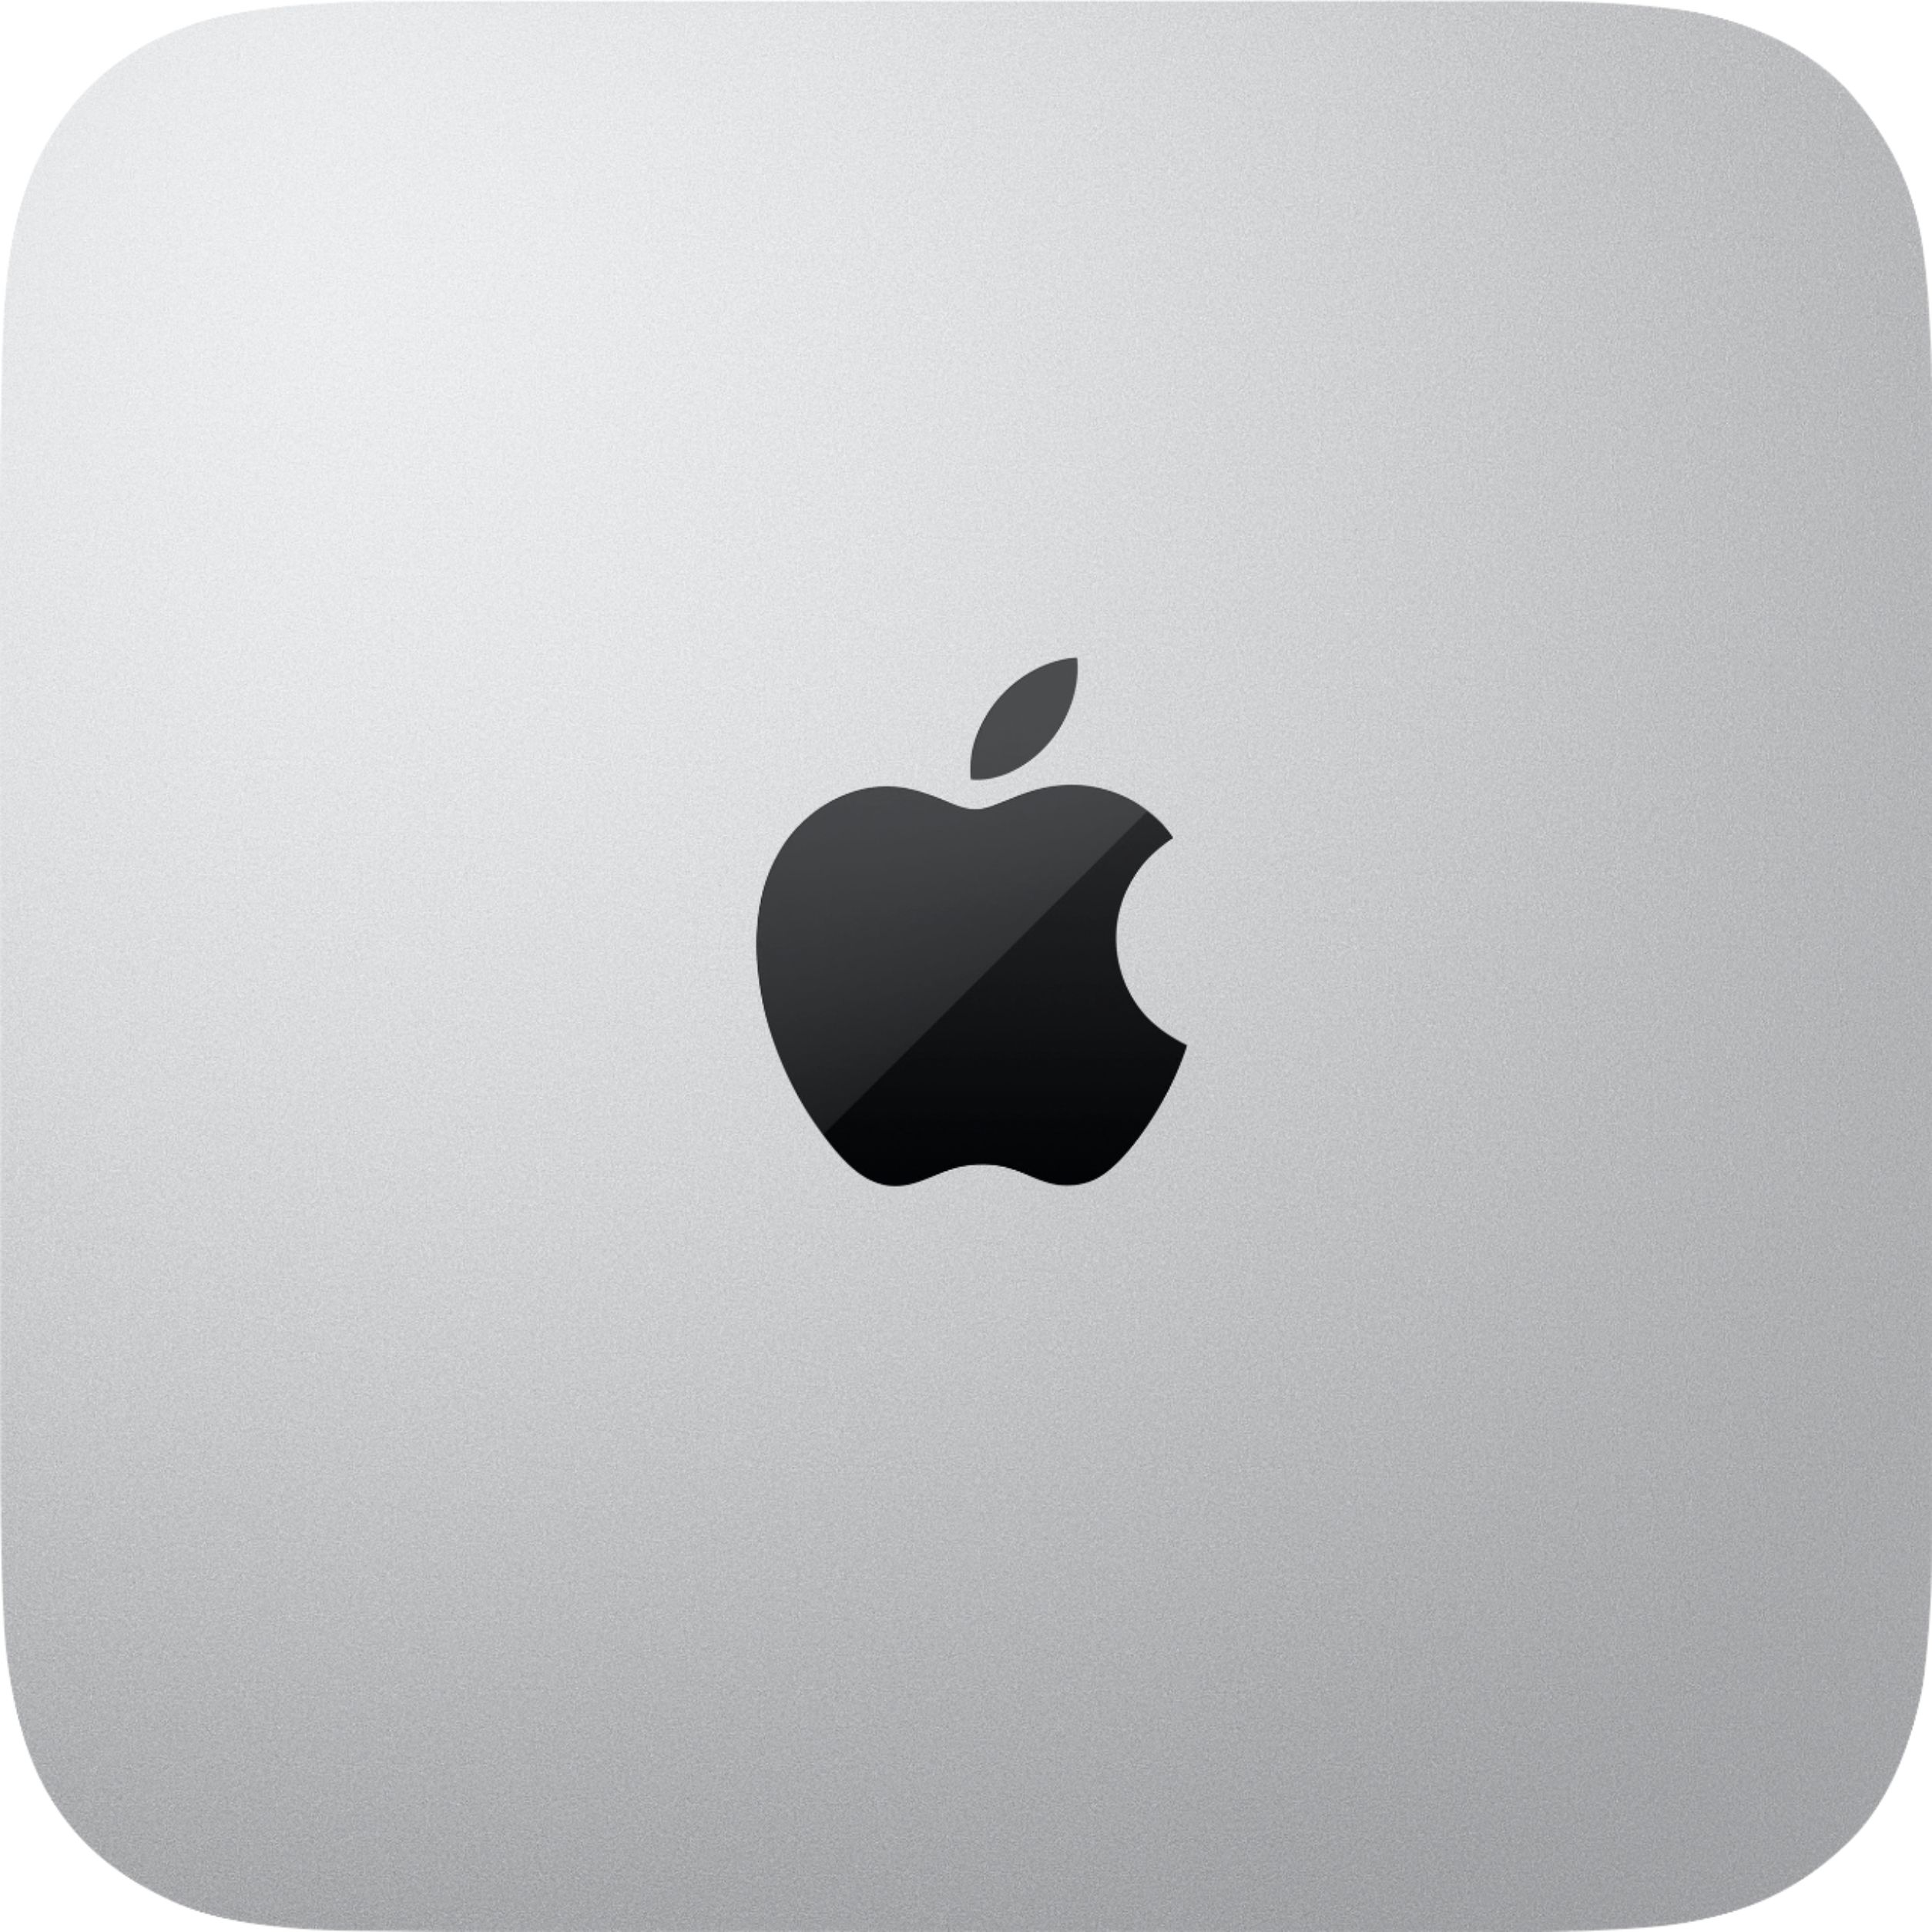 Mac mini Desktop Apple M1 chip 8GB Memory 256GB SSD (Latest Model 